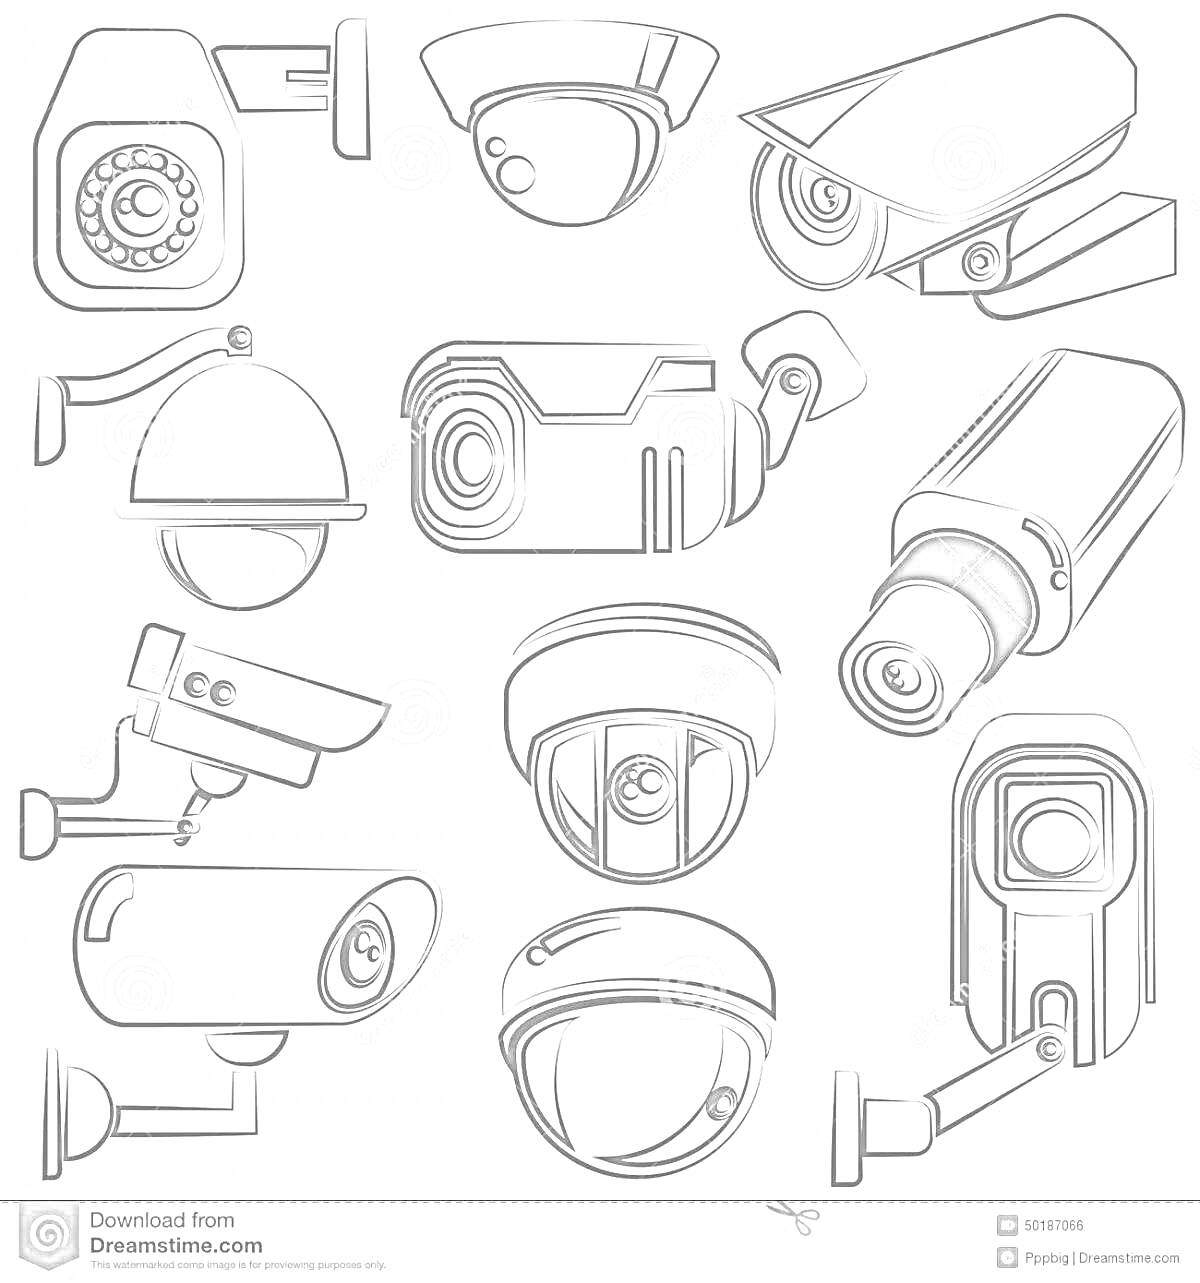 Раскраска Разные типы видеокамер: купольные, цилиндрические, уличные и объективные камеры